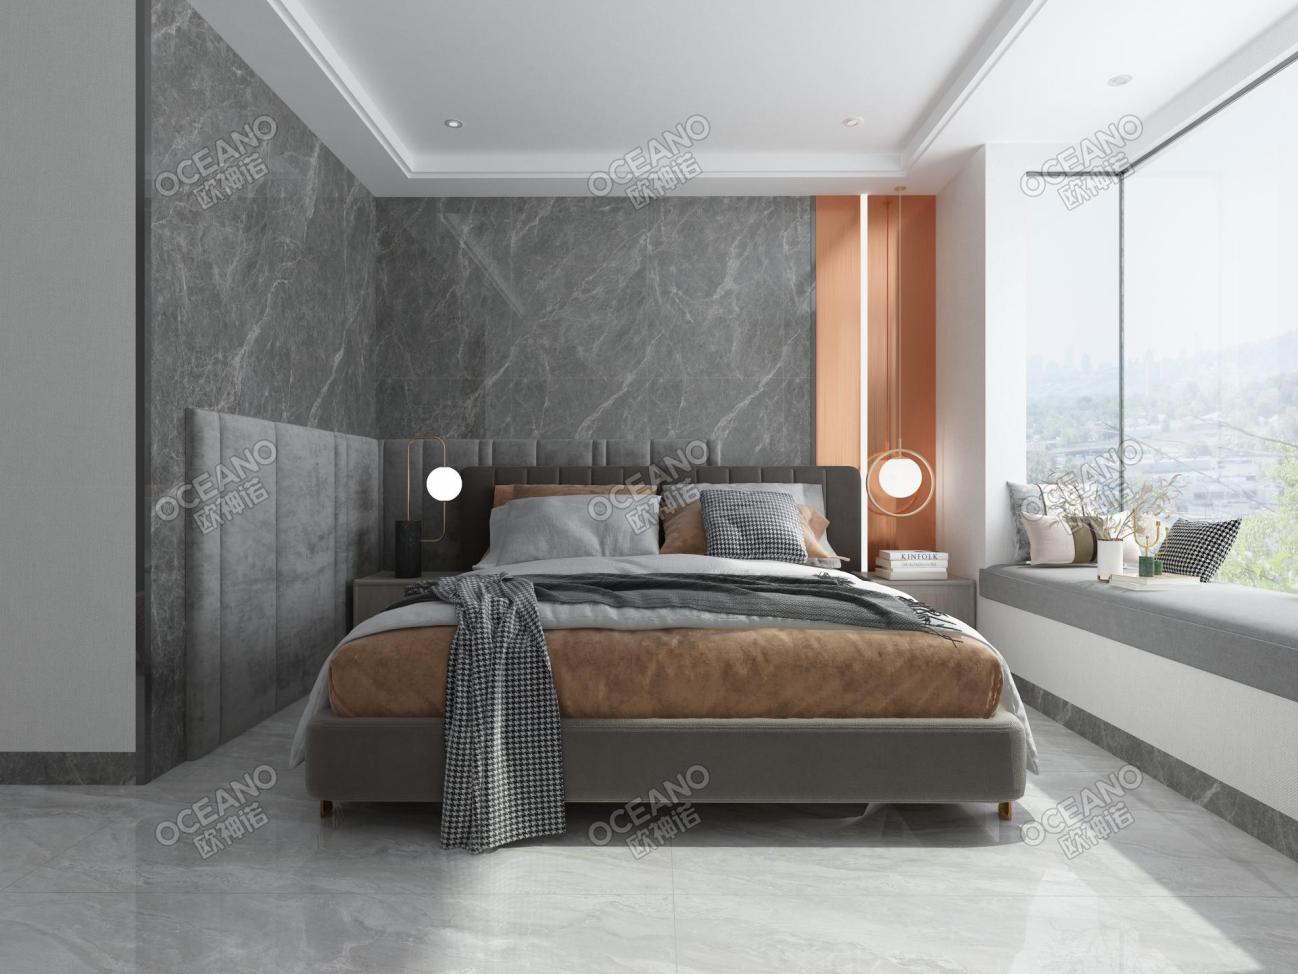 昆明产投·上河院c3户型卧室-欧神诺瓷砖效果图